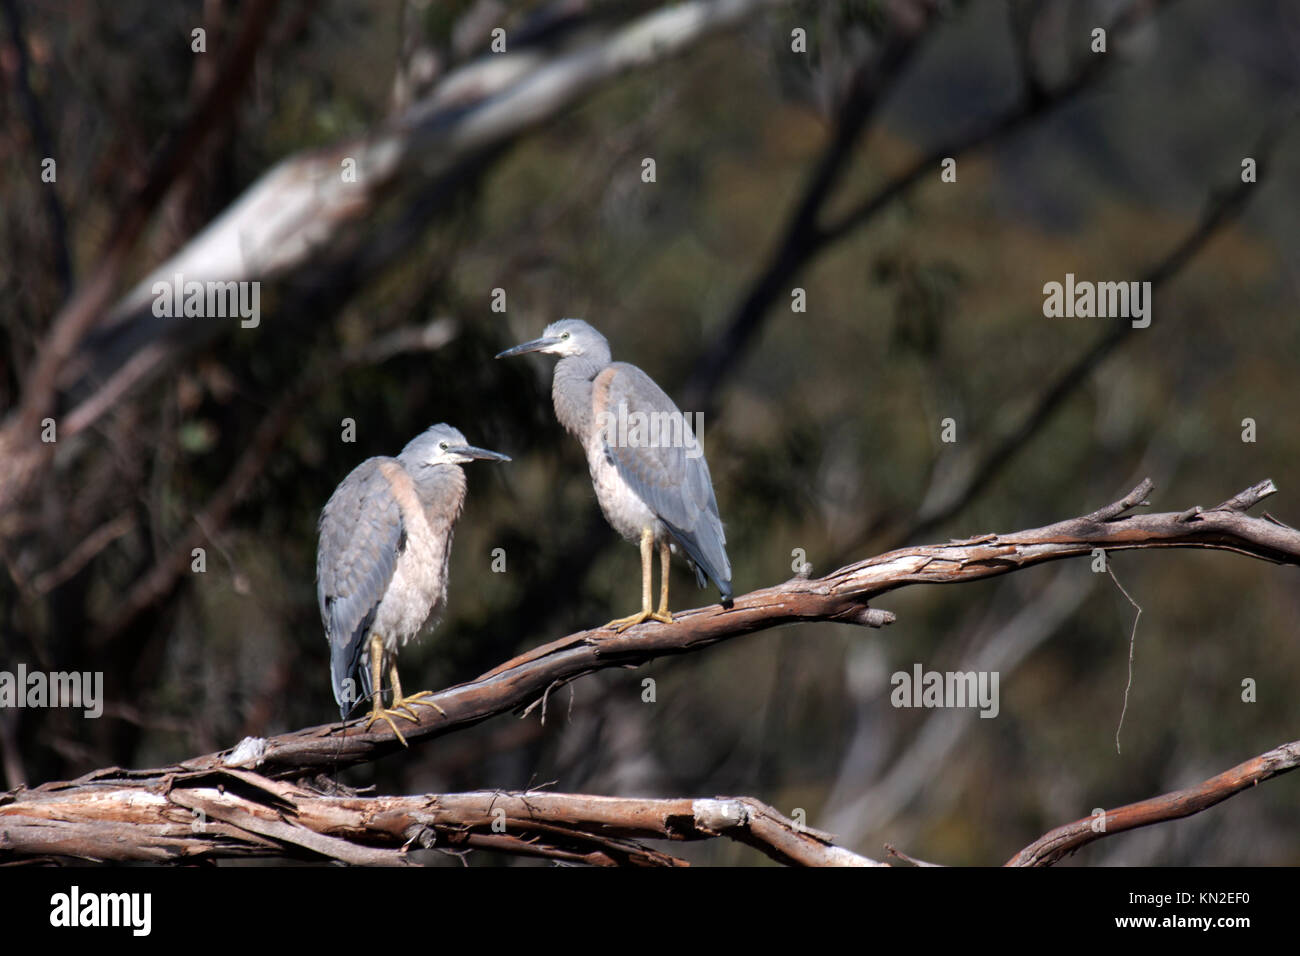 White faced heron in Australia Stock Photo